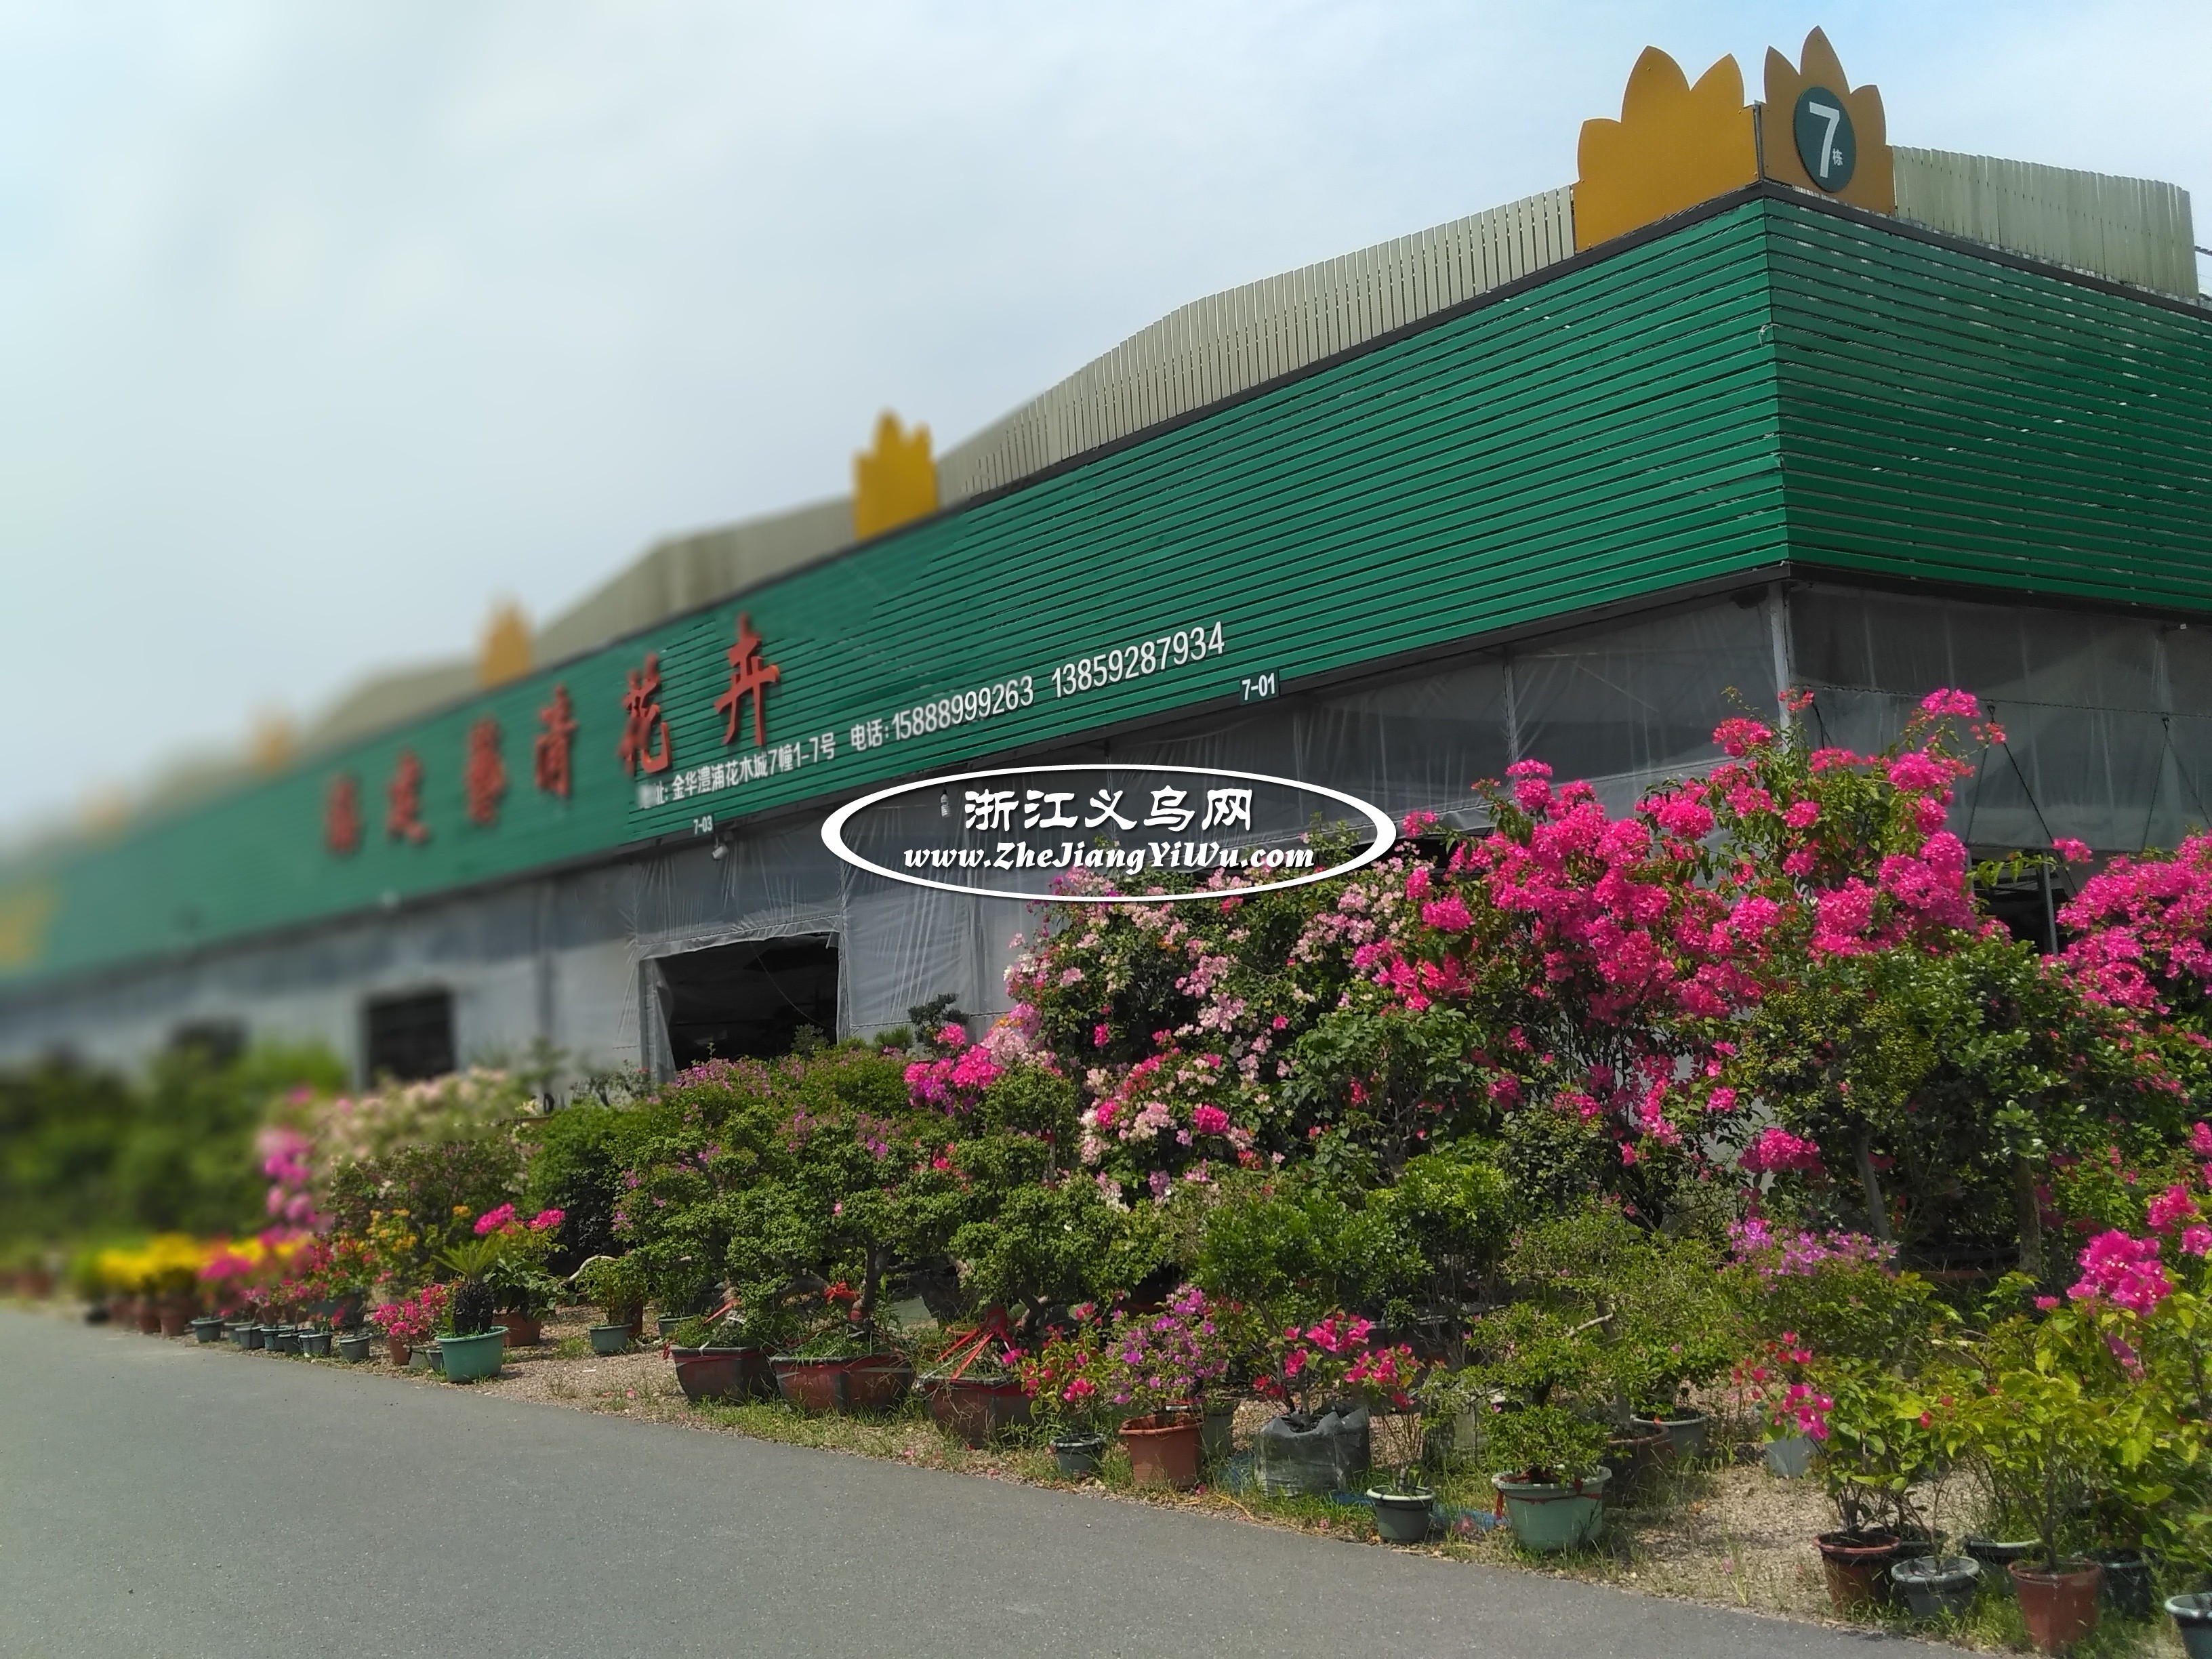 金华市澧浦苗木城是浙中最大的苗木花卉批发市场